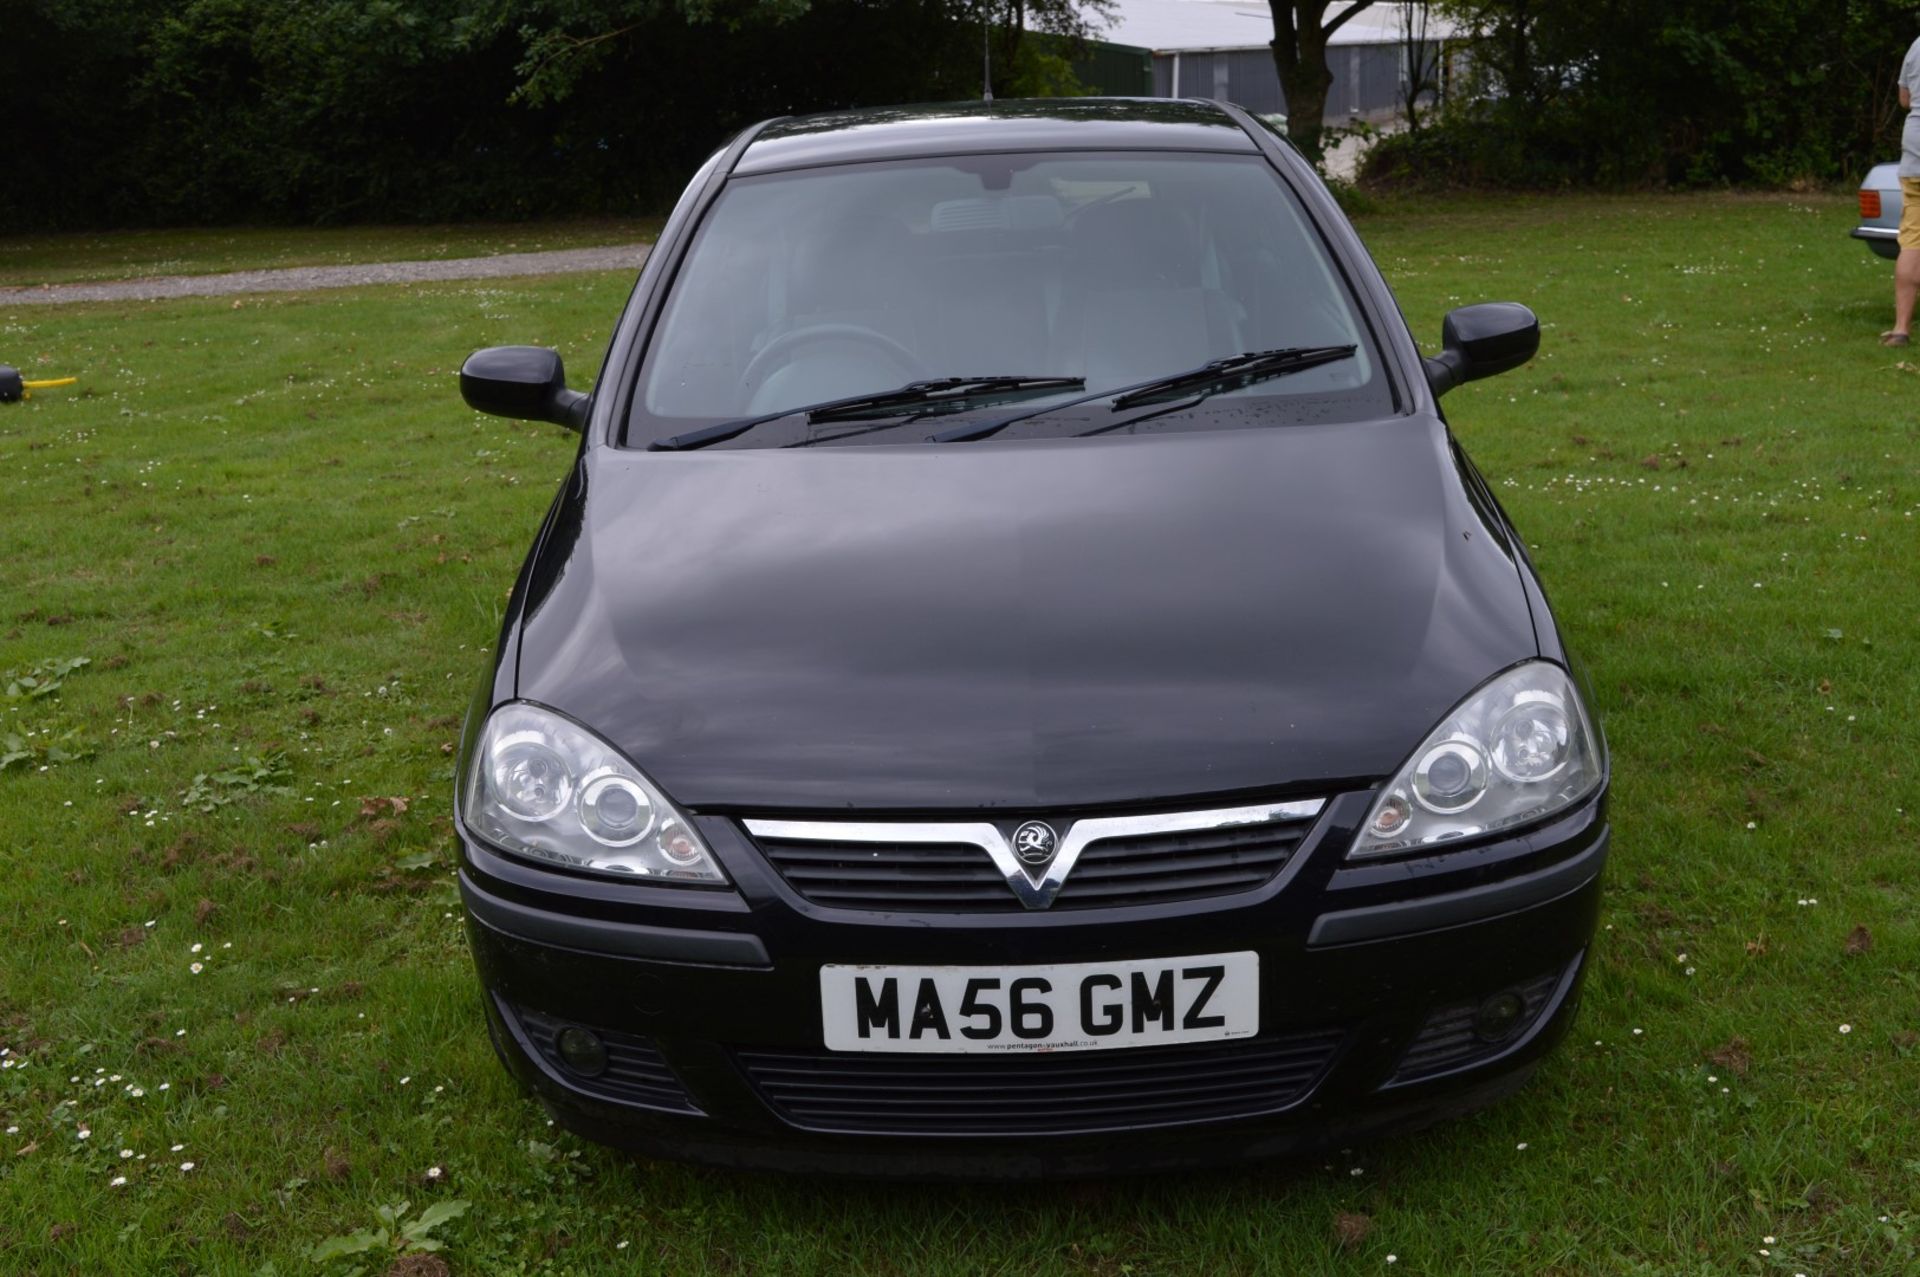 1 x Vauxhall Corsa SXI+ 3 Door Hatchback 1.2 - 2006 56 Plate - 78,000 Miles - MOT June 2018 - Image 10 of 36